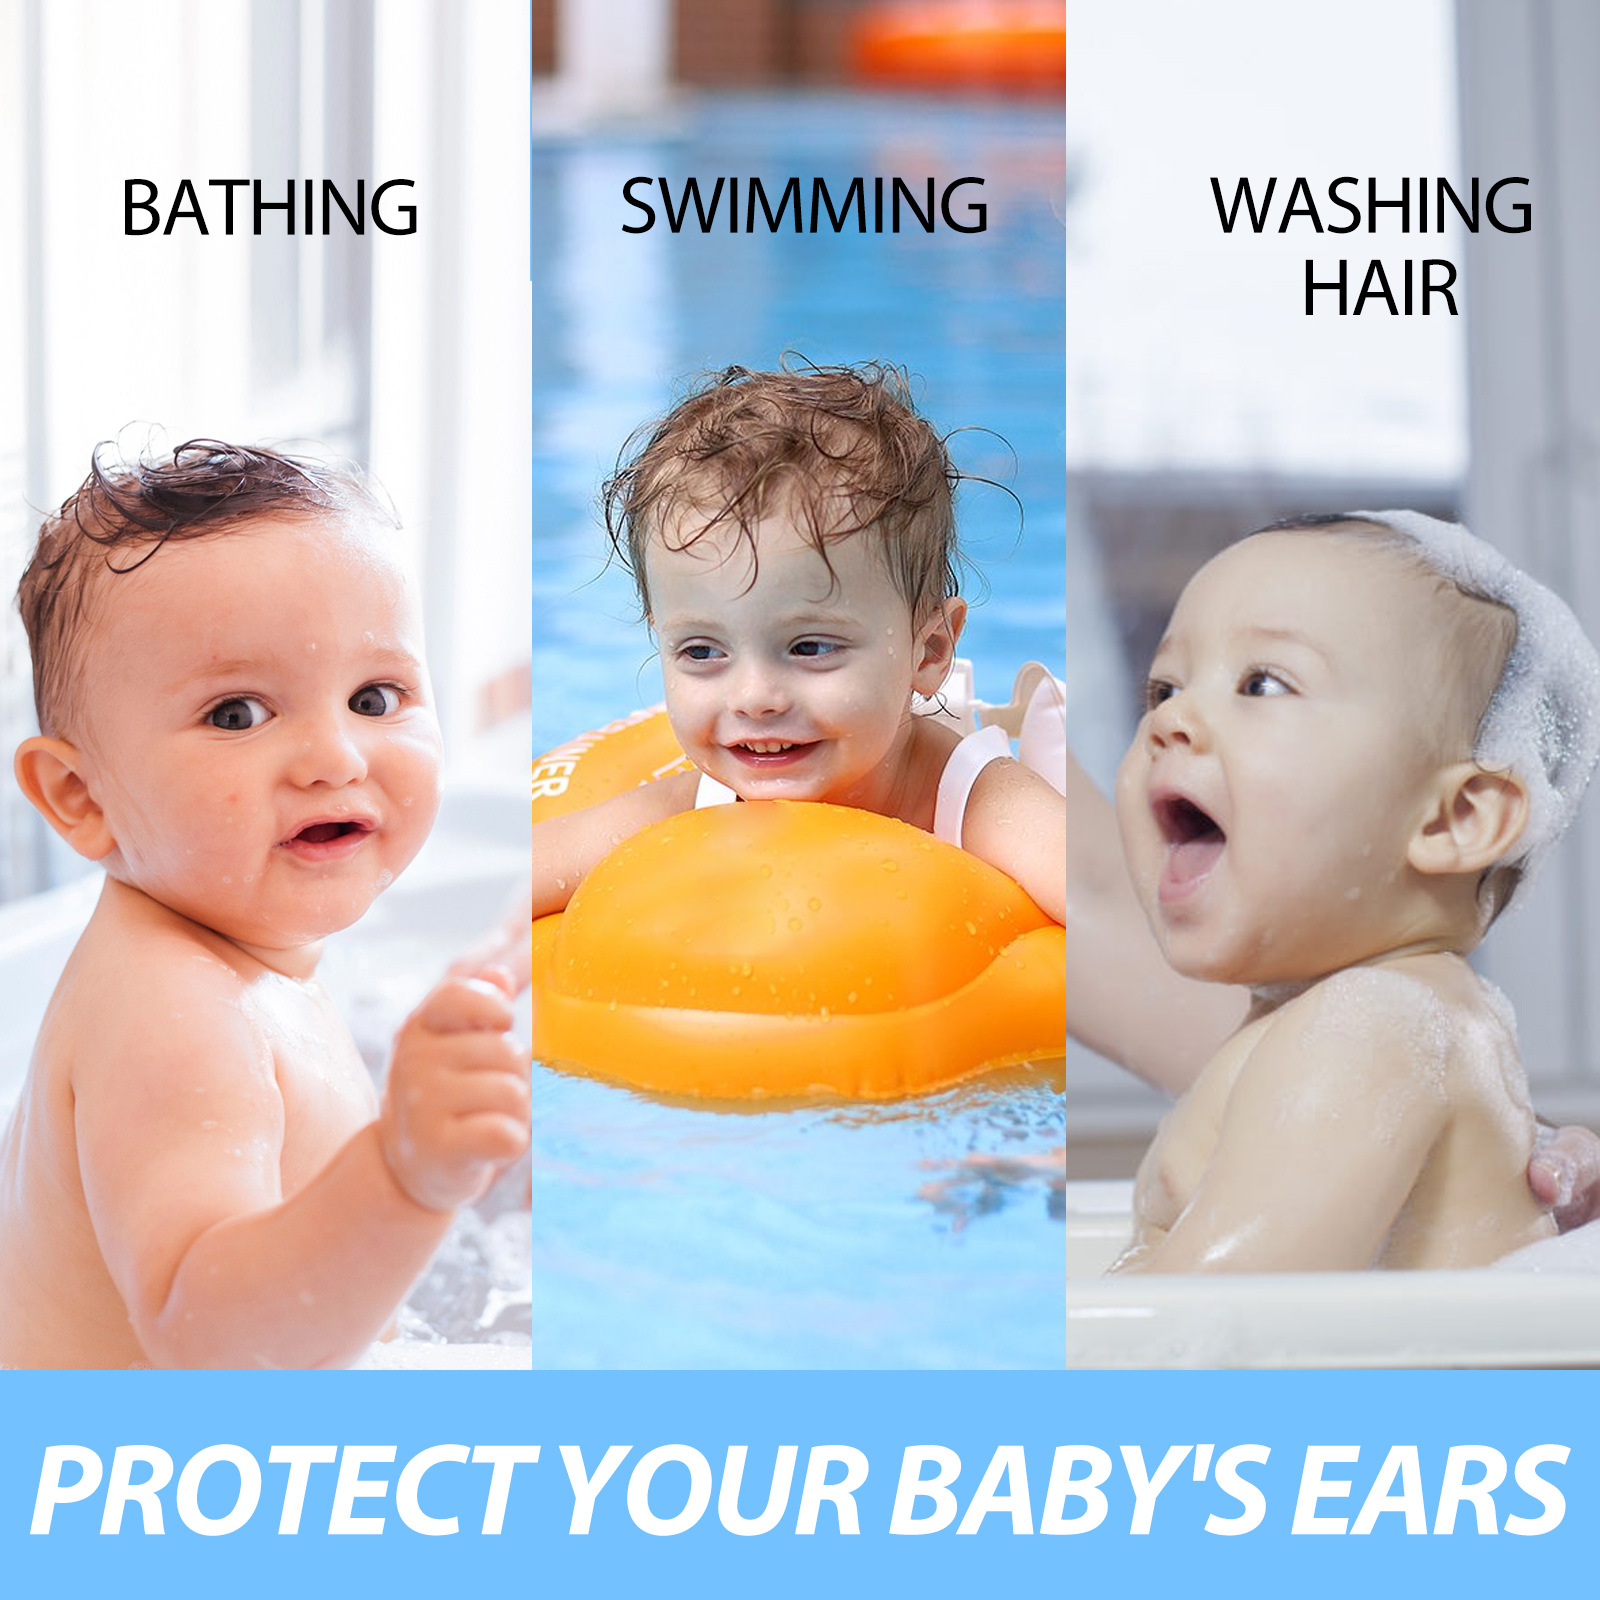 EELHOE婴儿保护耳朵防水耳贴 婴儿游泳洗澡洗头防进水耳贴护耳贴